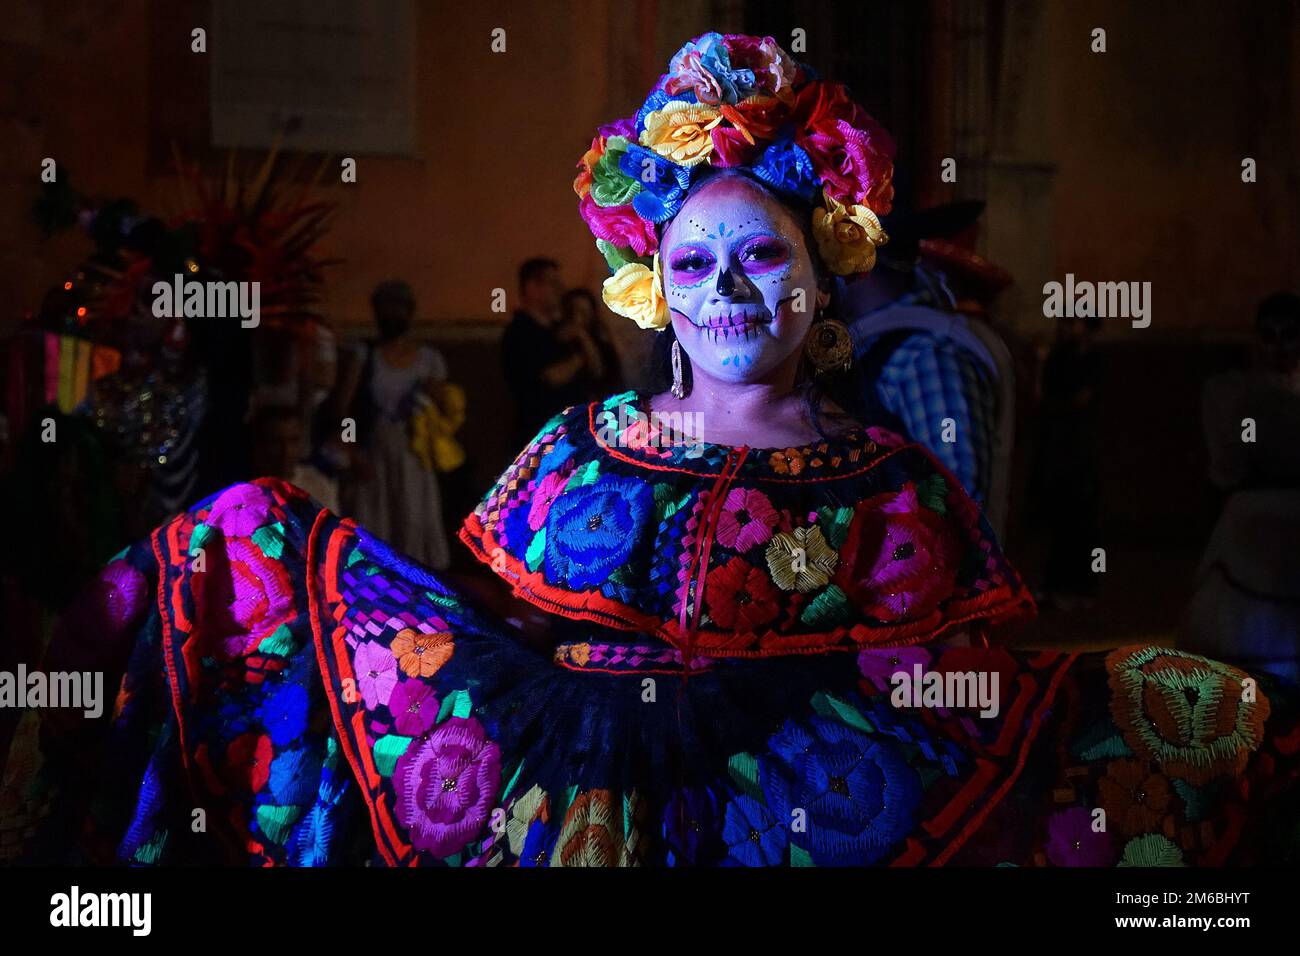 Eine Frau, die traditionell gesticktes mexikanisches Folk-Kleid und geblümten Kopfschmuck für die Catrina Parade, Teil von Day of the Dead, Merida, Mexiko trägt Stockfoto